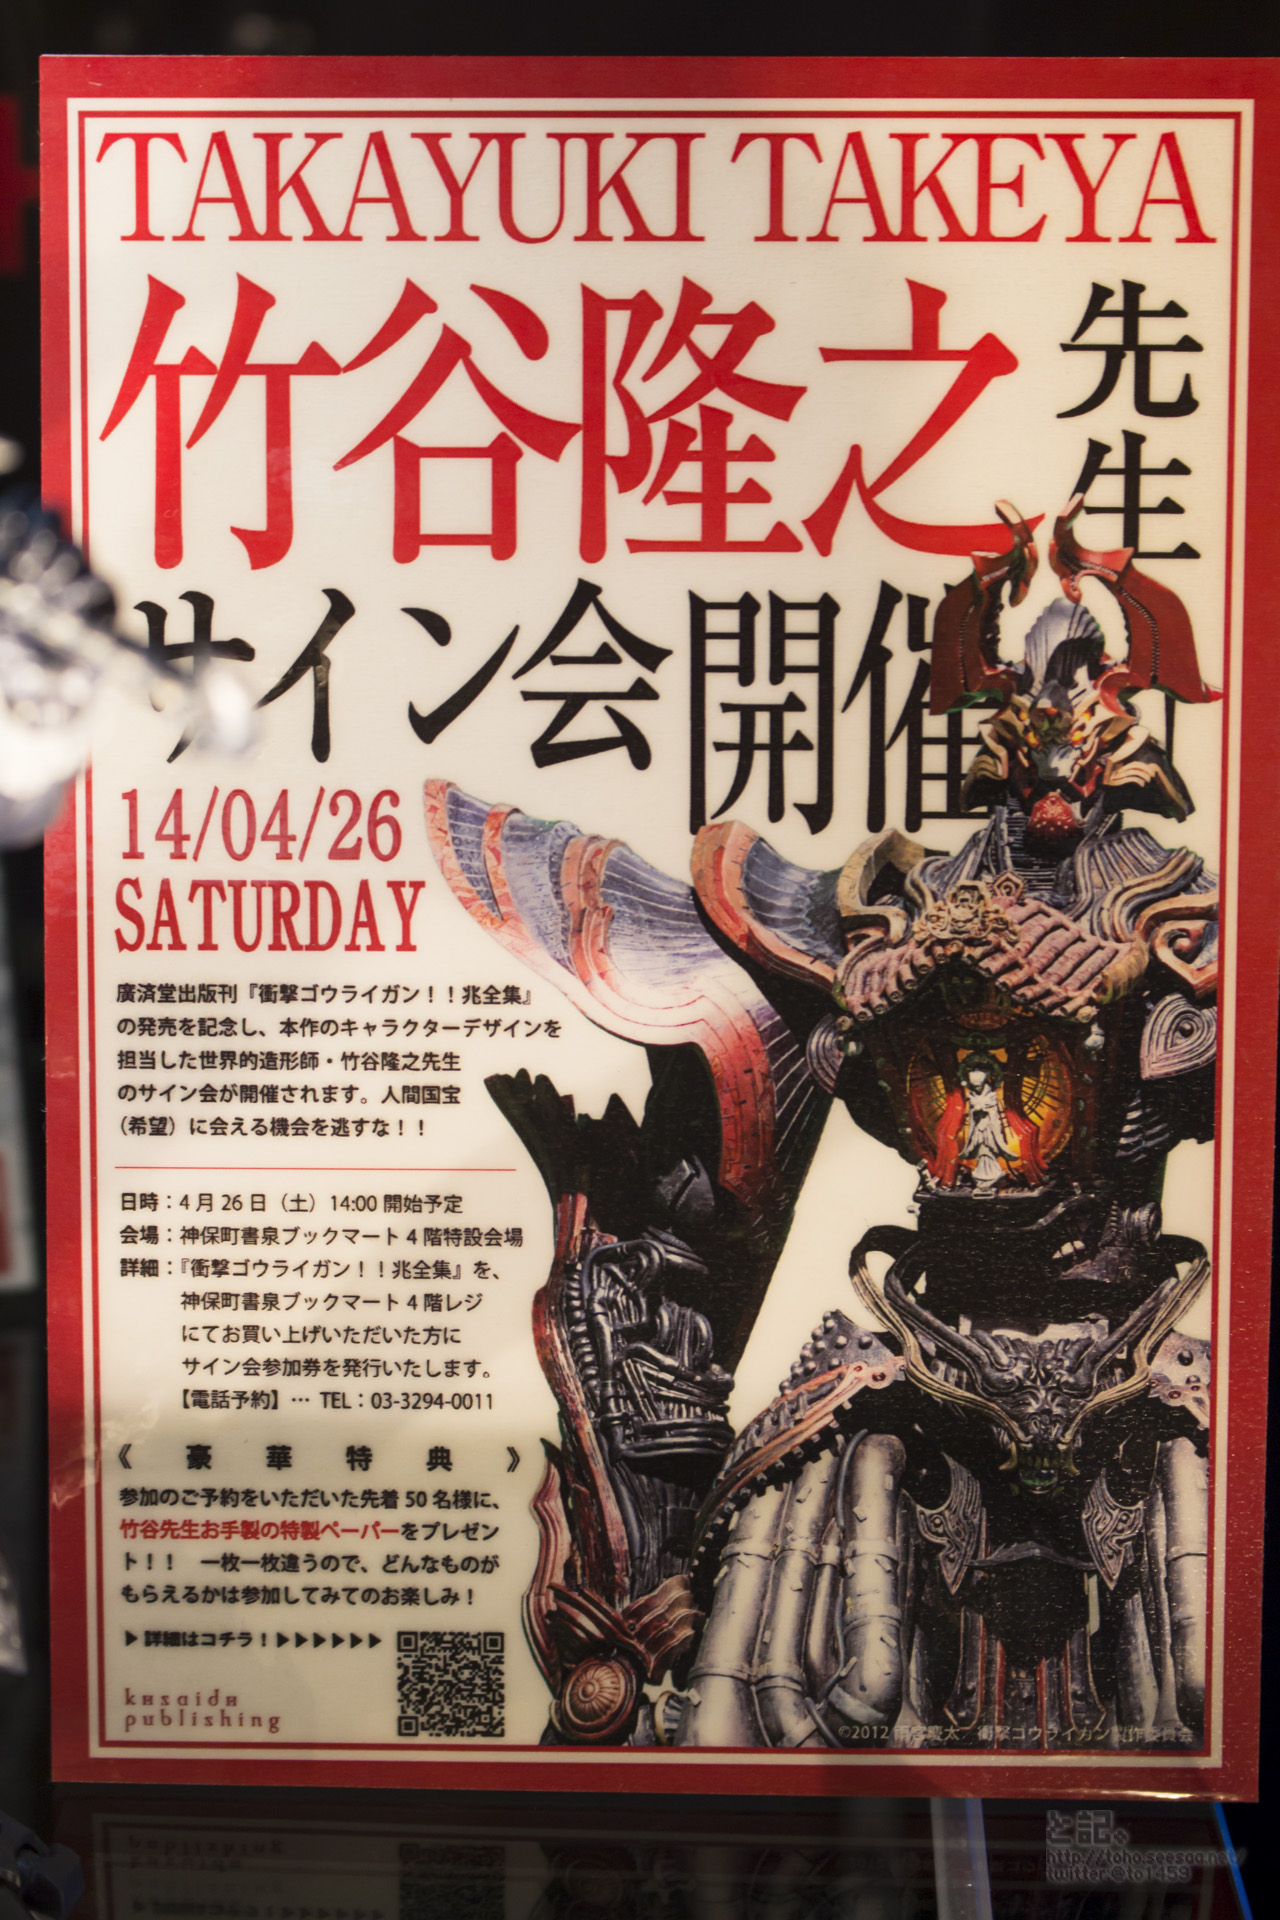 [Exposição] Tamashii Nation AKIBA Showroom - 31/05/2014 - Página 2 14016890094_c09654f9a3_o